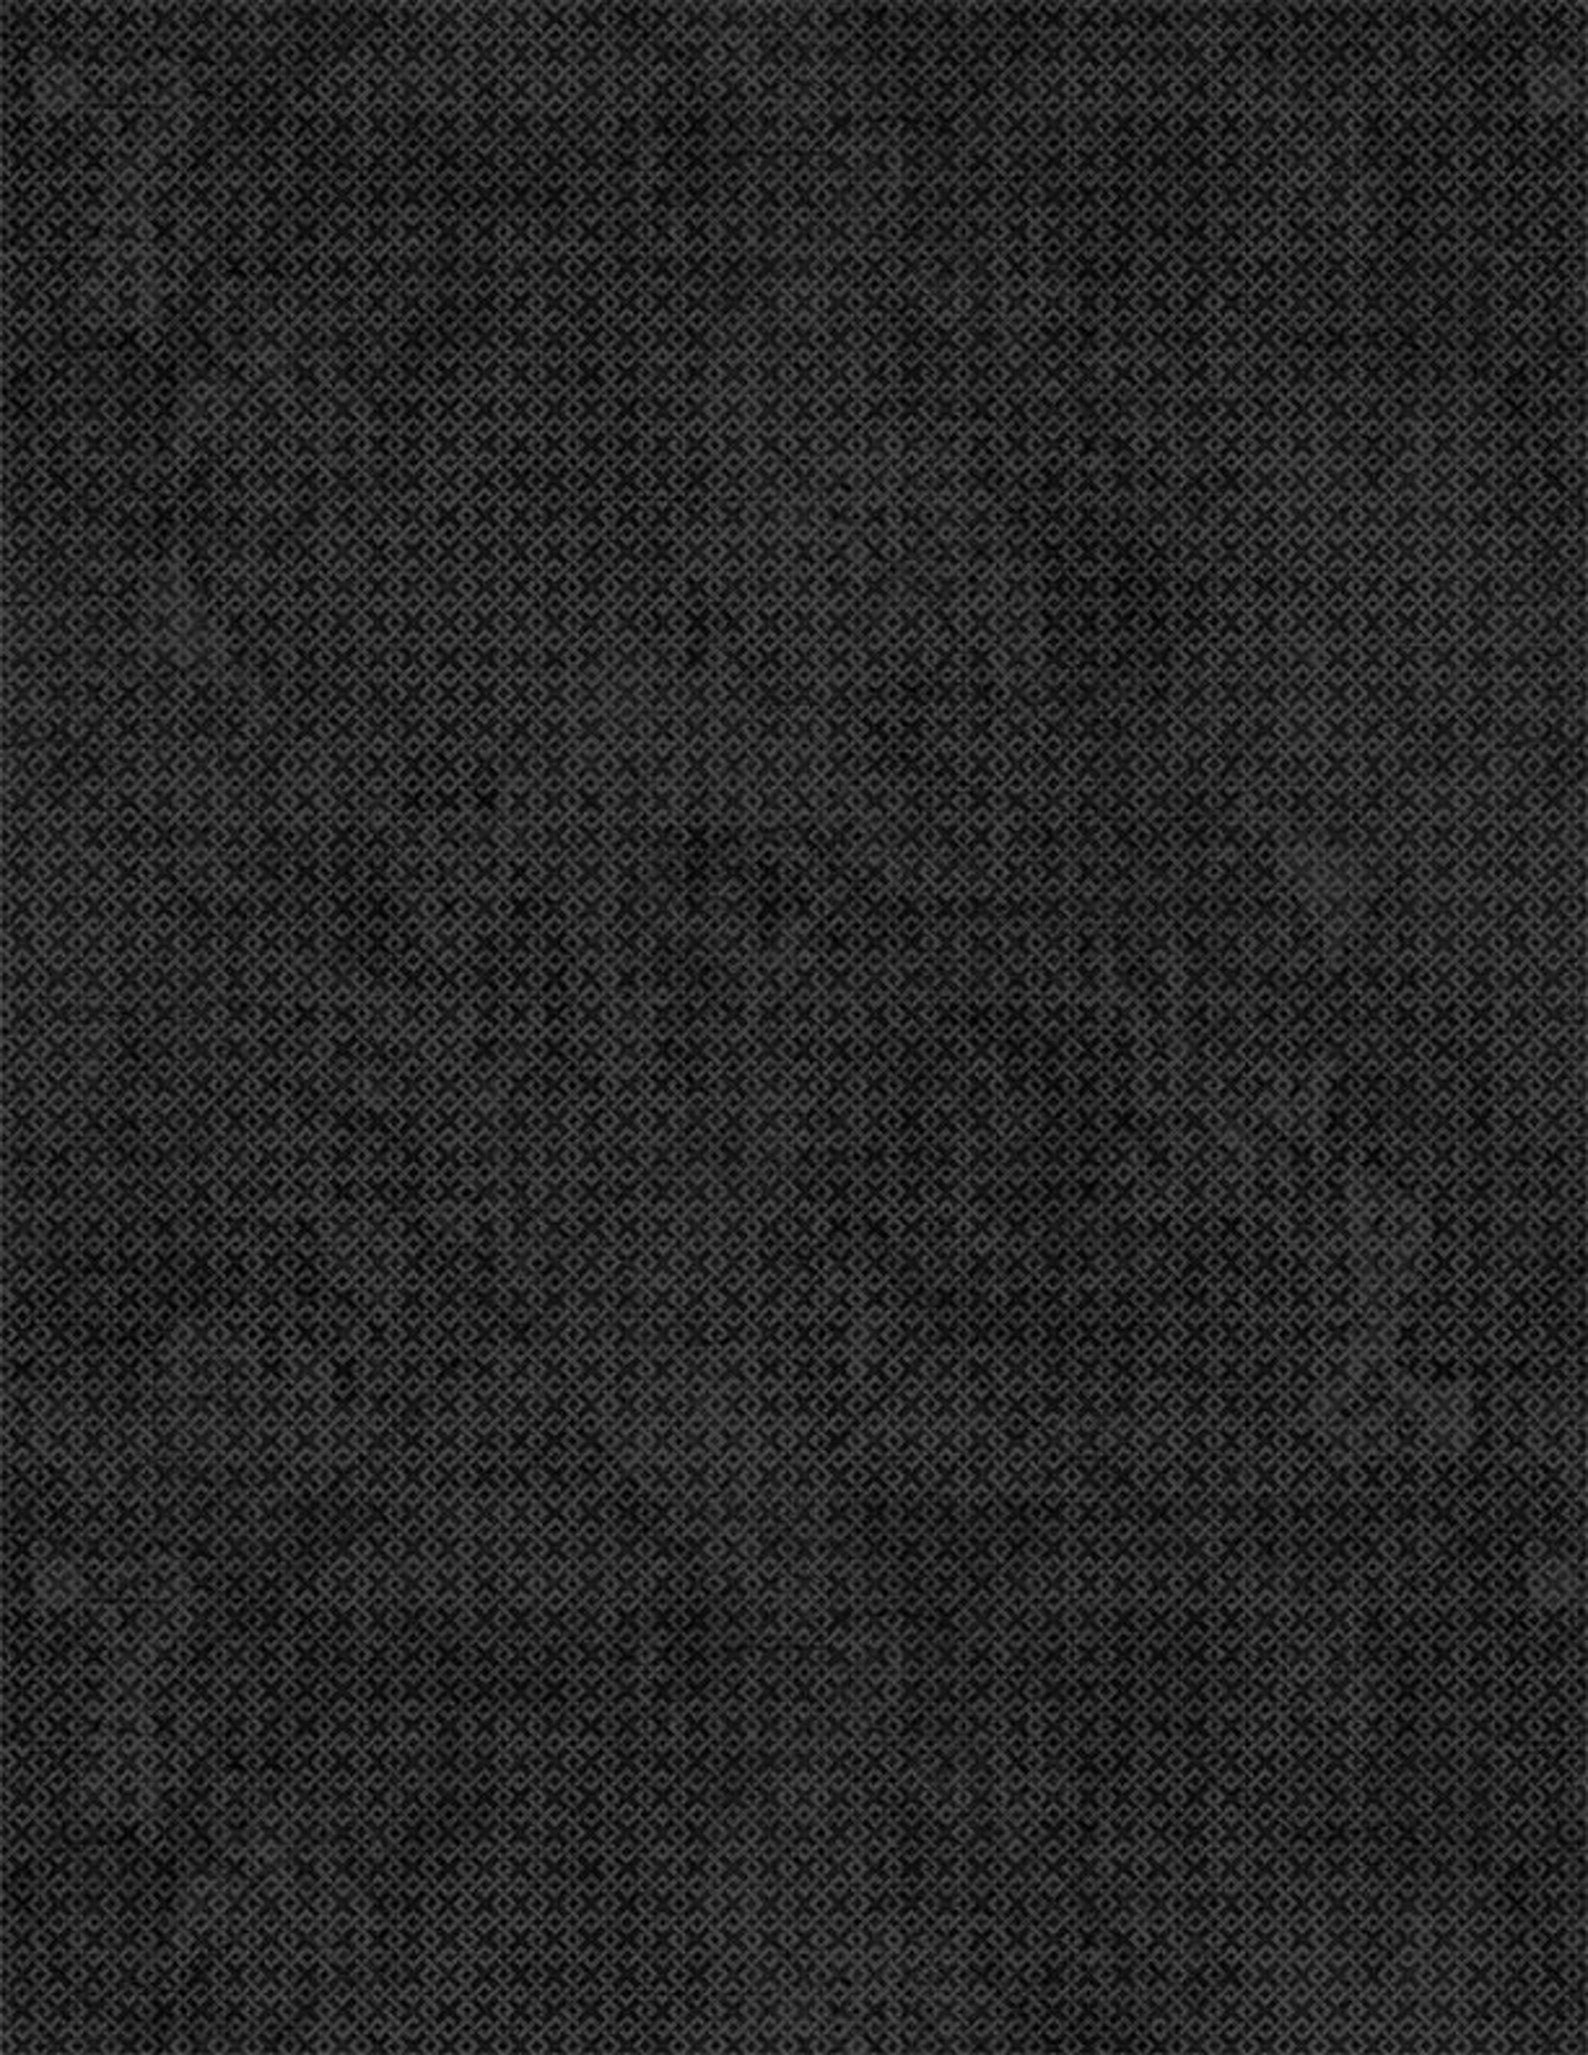 WP Batik Criss-cross Texture Black